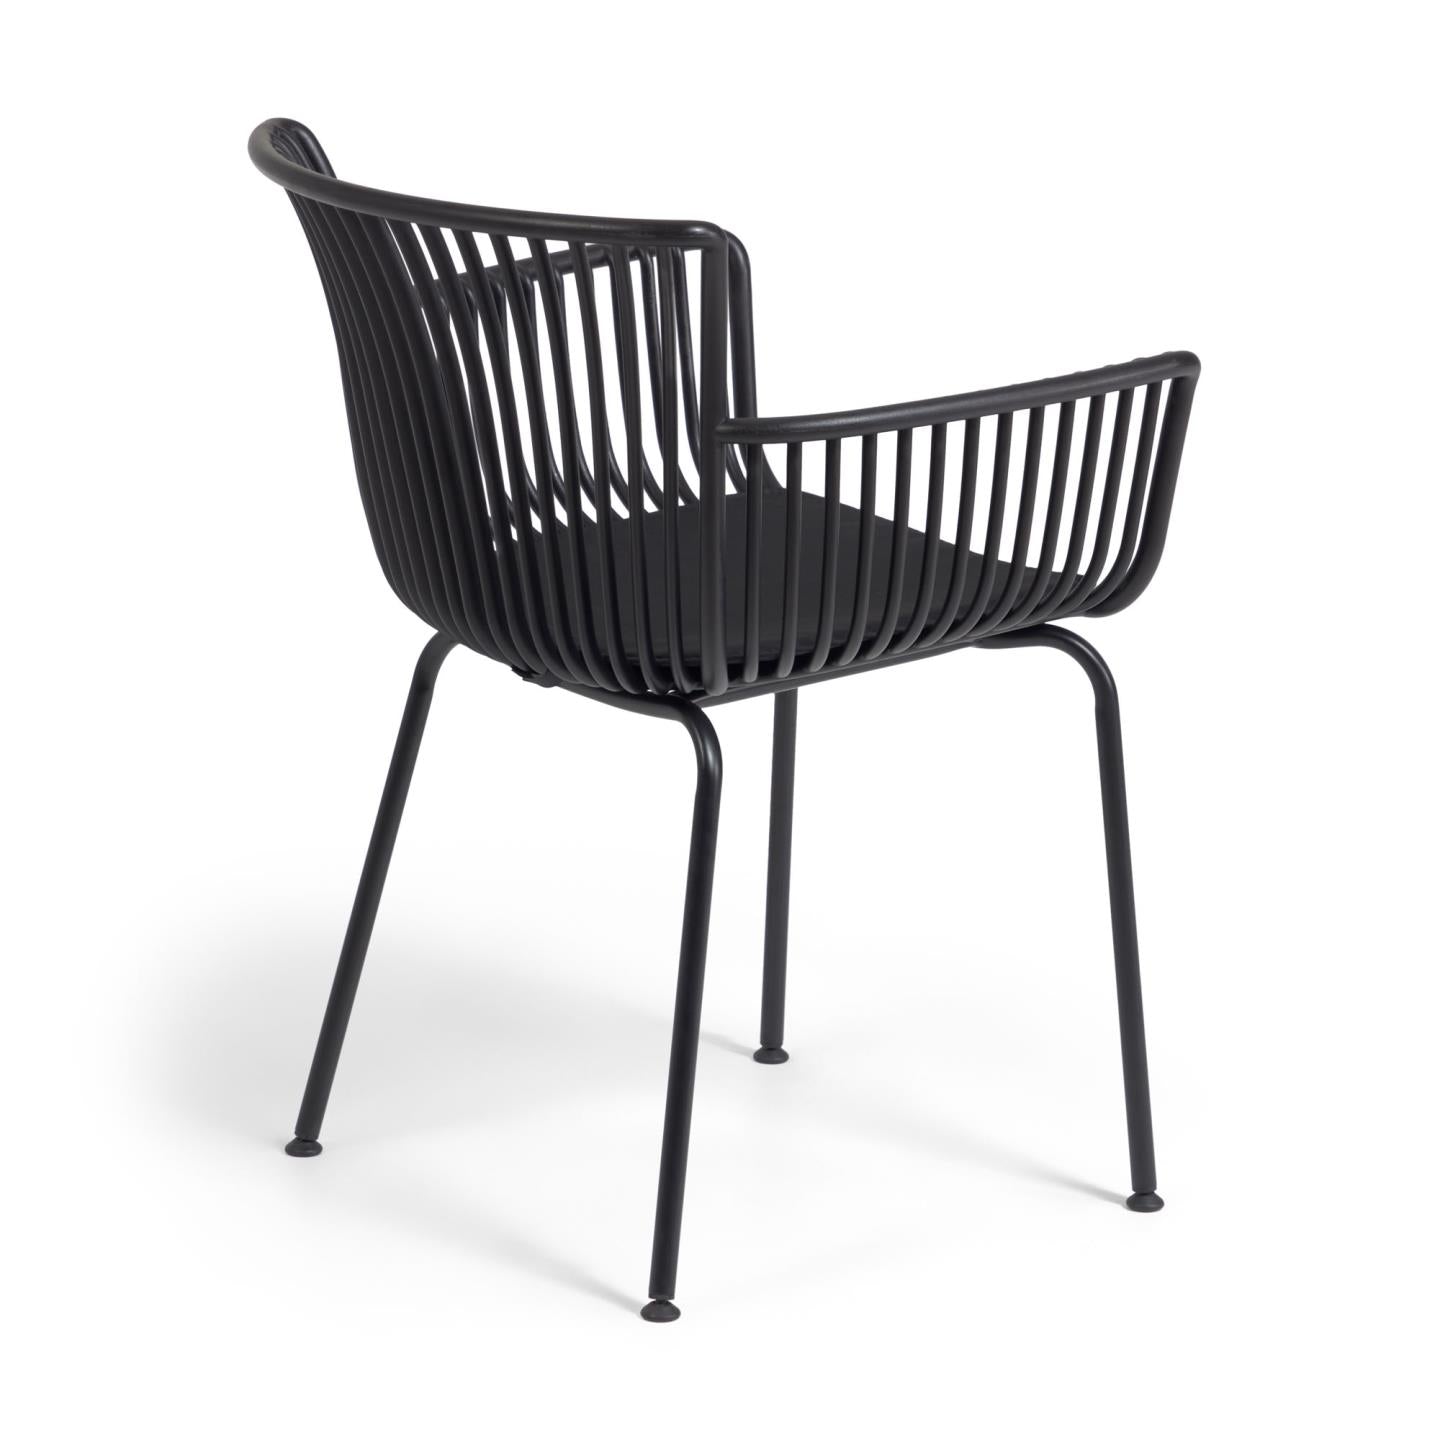 Surpika outdoor chair in black